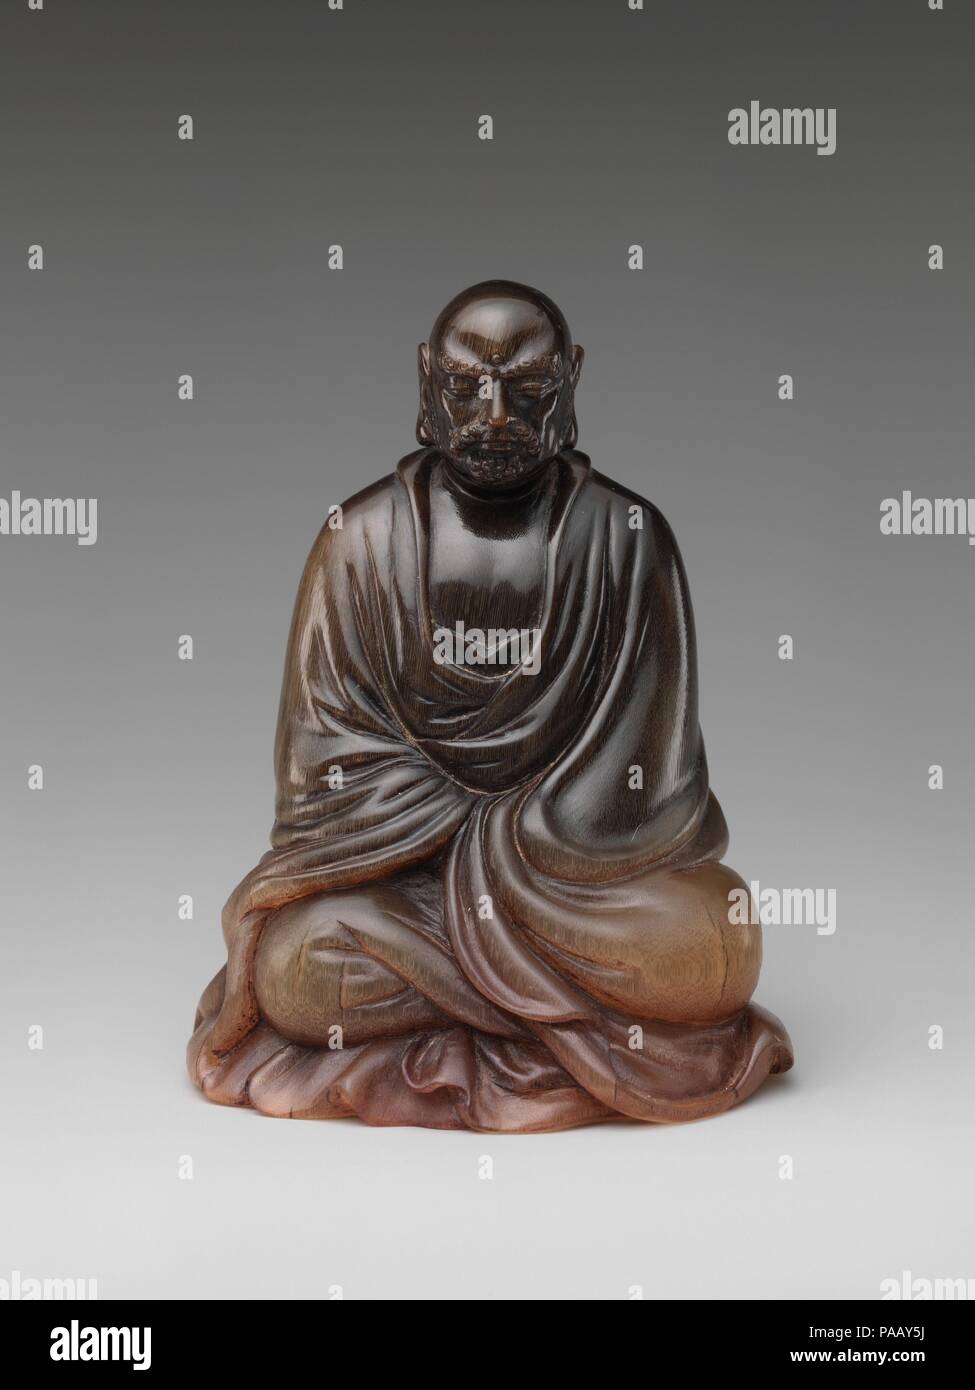 Buddhist Monk Bodhidharma Chinese Damo Culture China - 